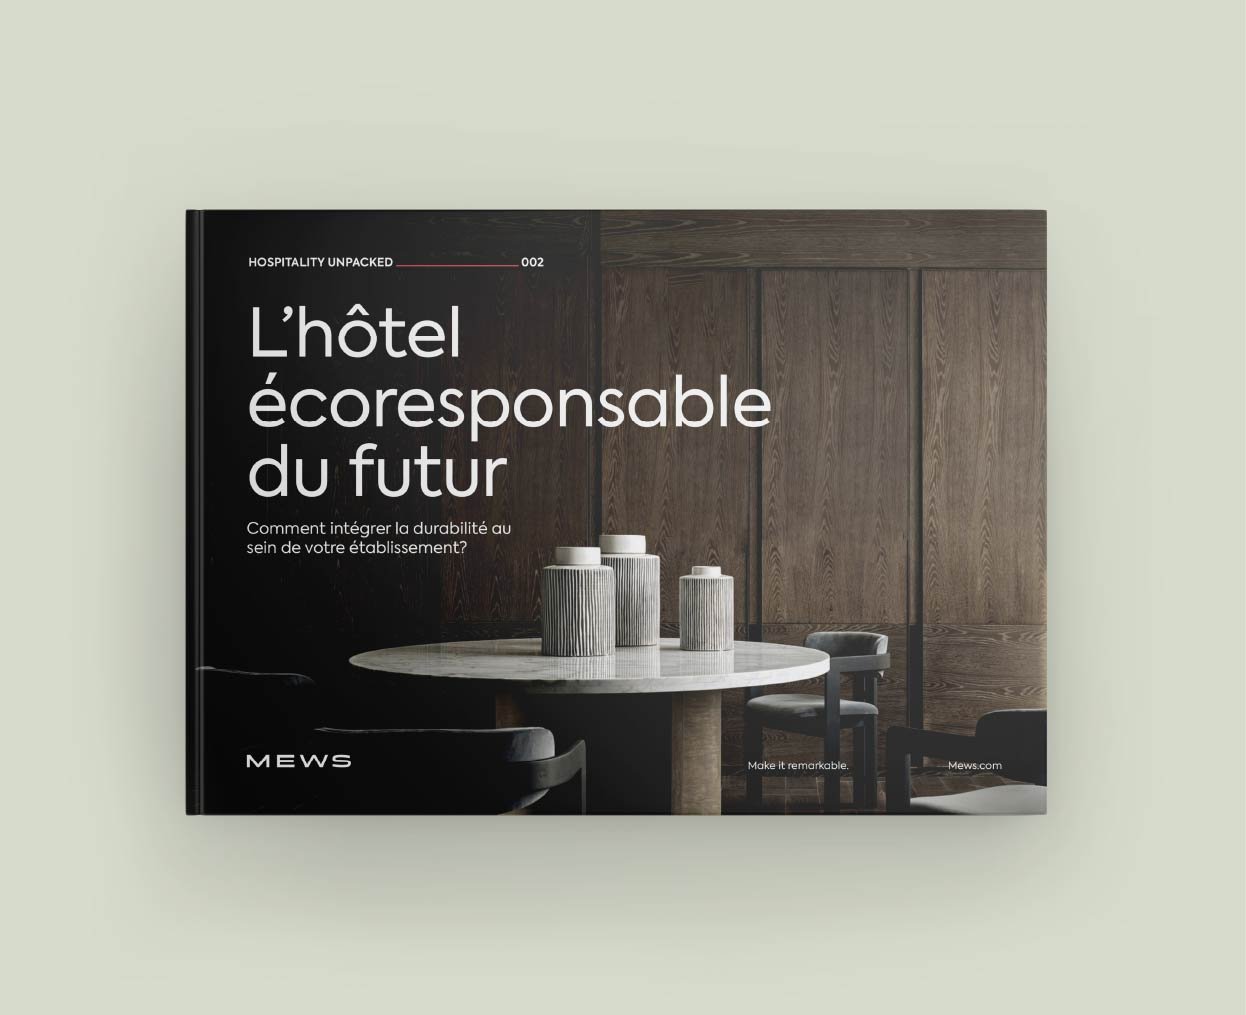 L'Hôtel Eco-responsable du Futur {id=1, name='Recherche', order=1}